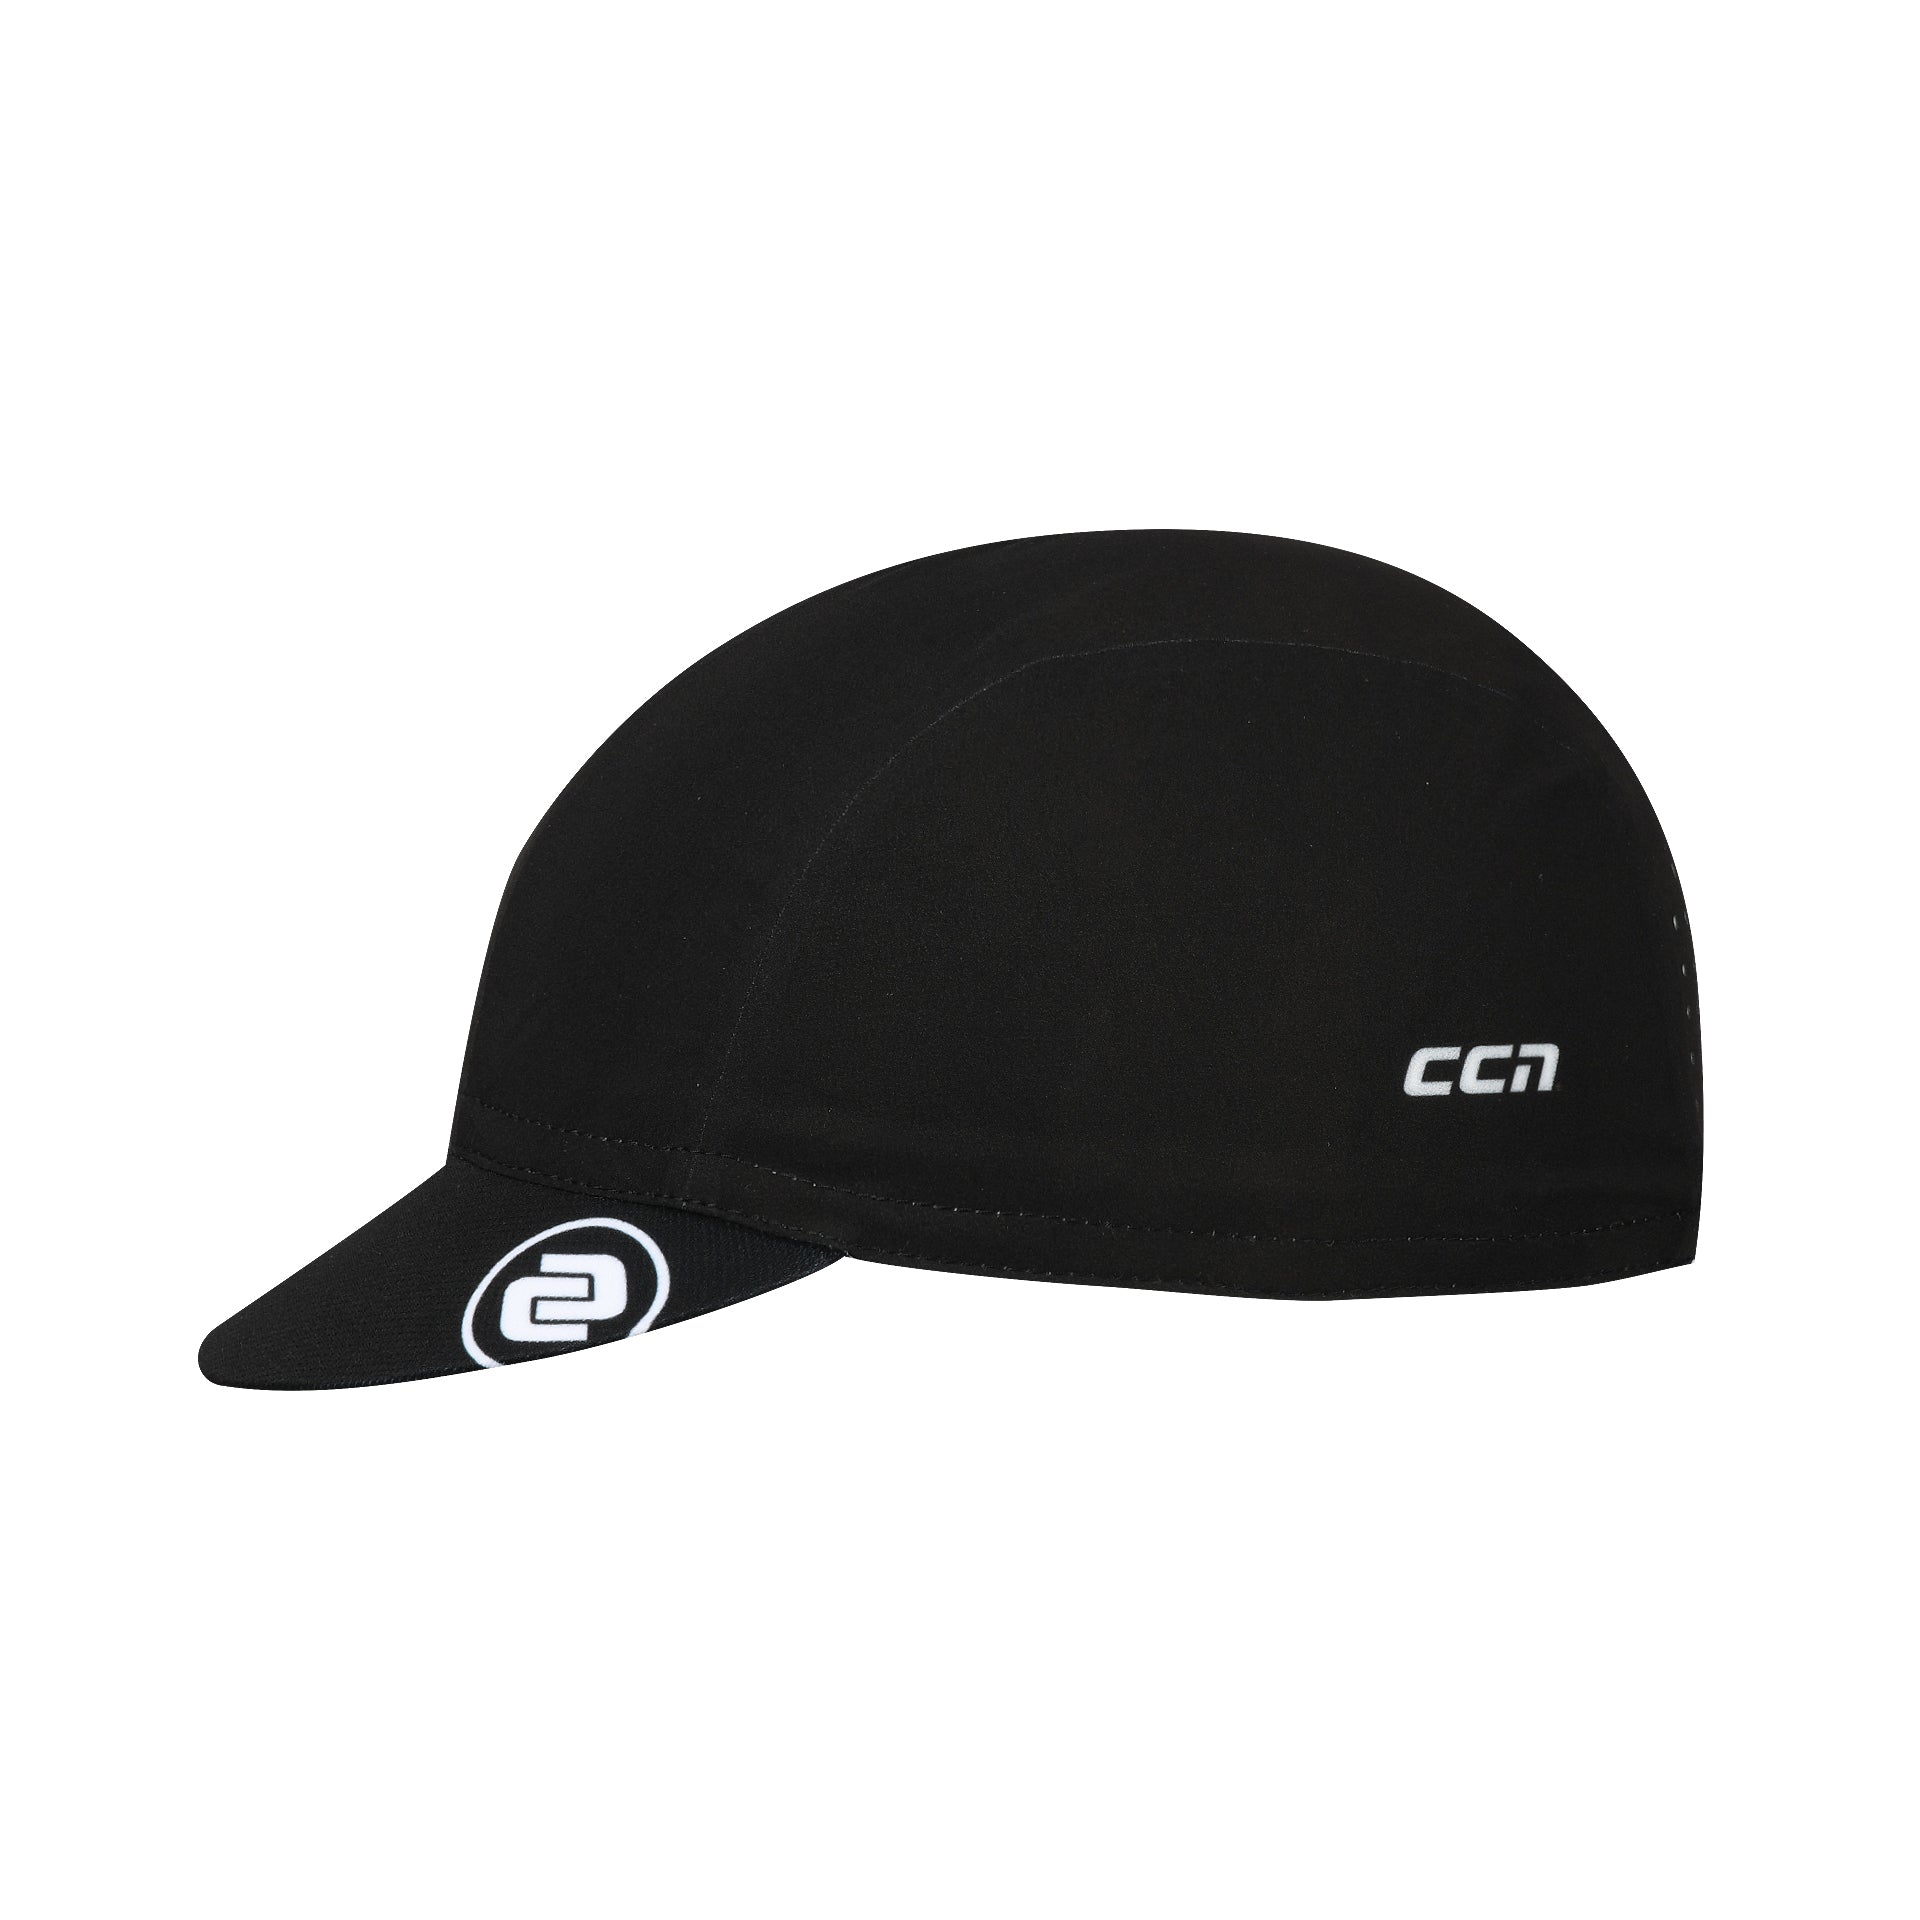 Aero JC Black Cap Accessories, Aero, Caps, Mens, Womens